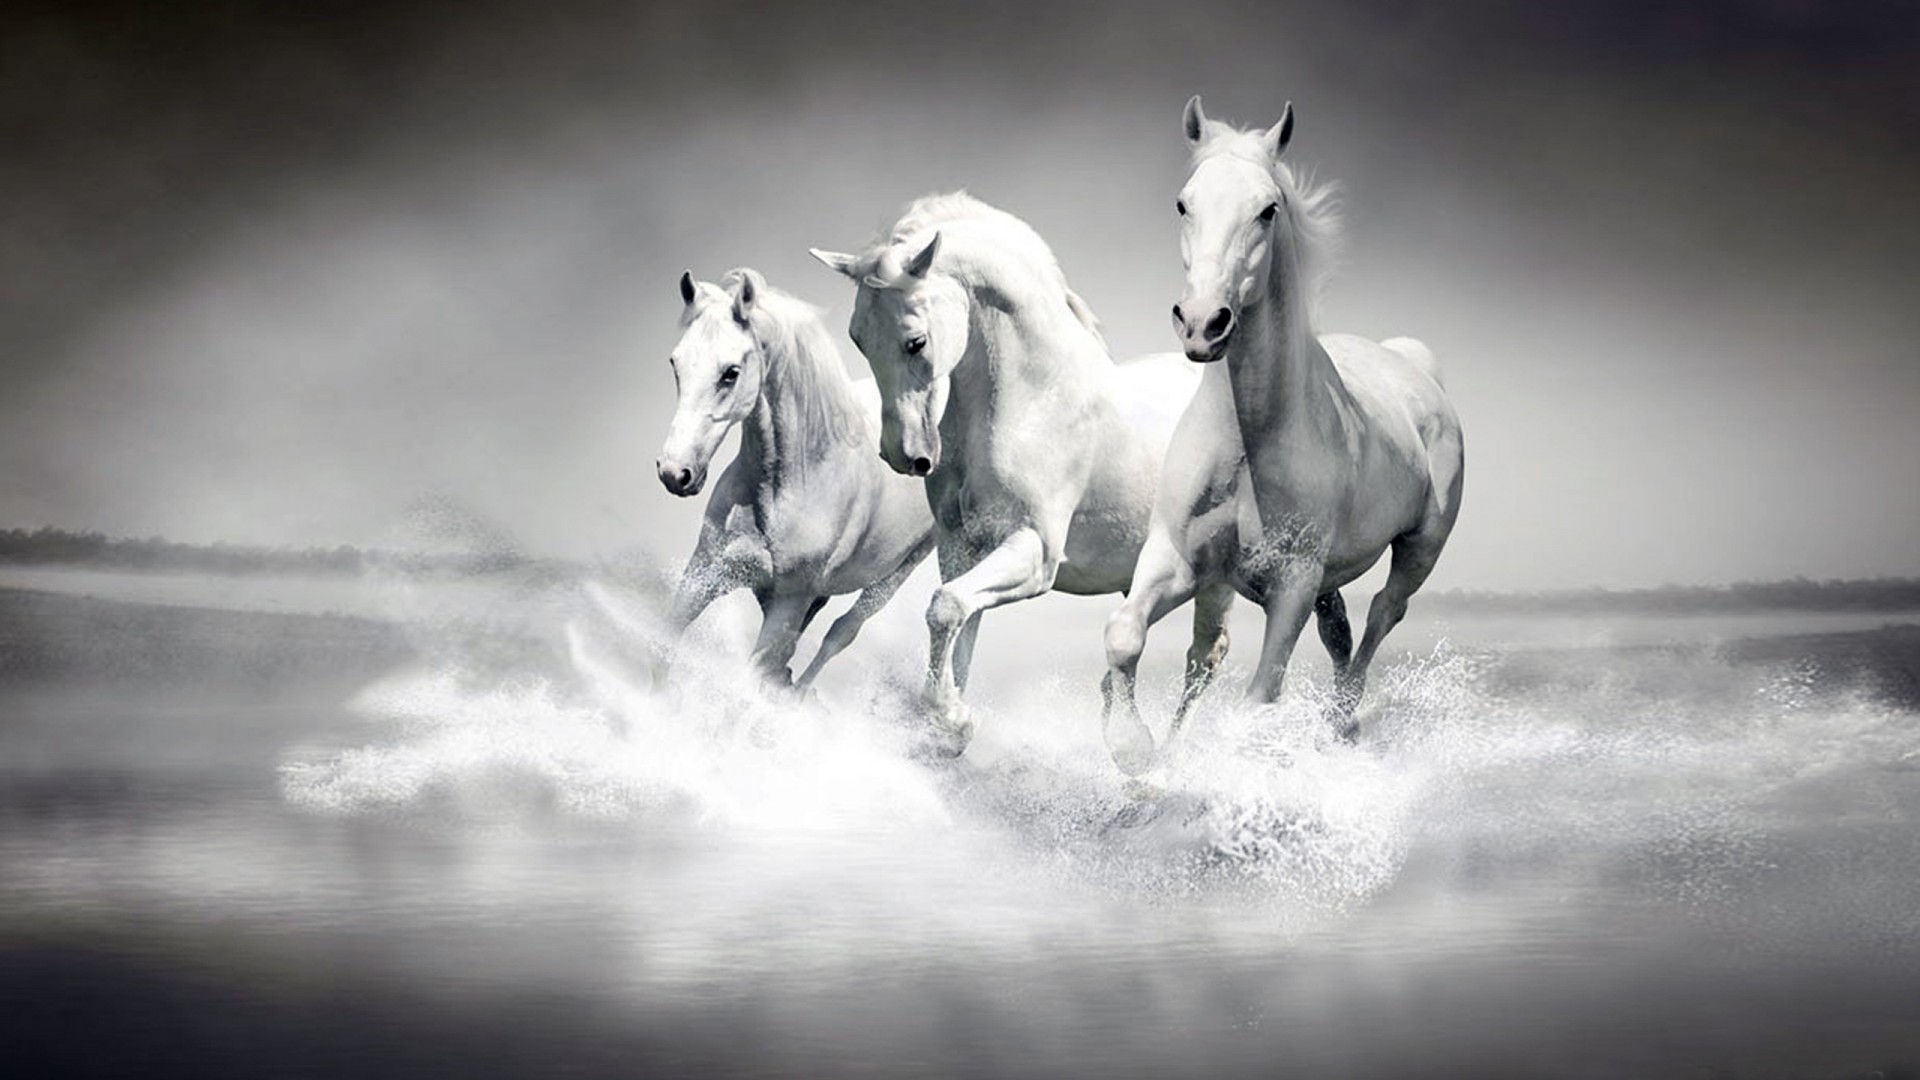 tapeten weiß,pferd,weiß,schwarz und weiß,mähne,monochrome fotografie